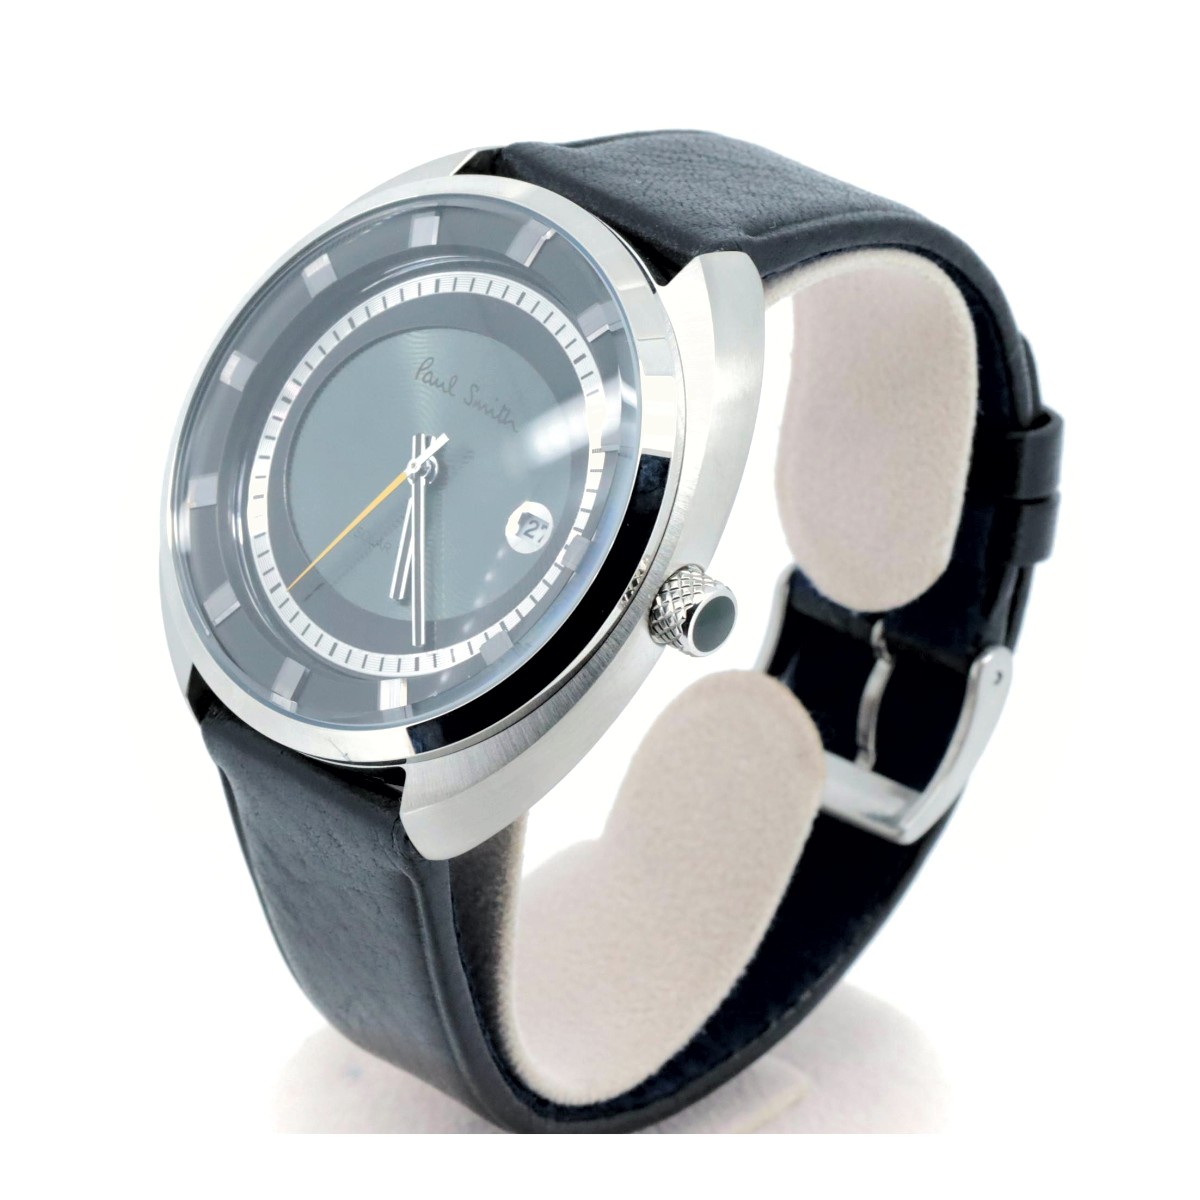 ポールスミス ラウンドフェイス ソーラーテック デイト J810-T021972 グレー メンズ腕時計 質屋出品